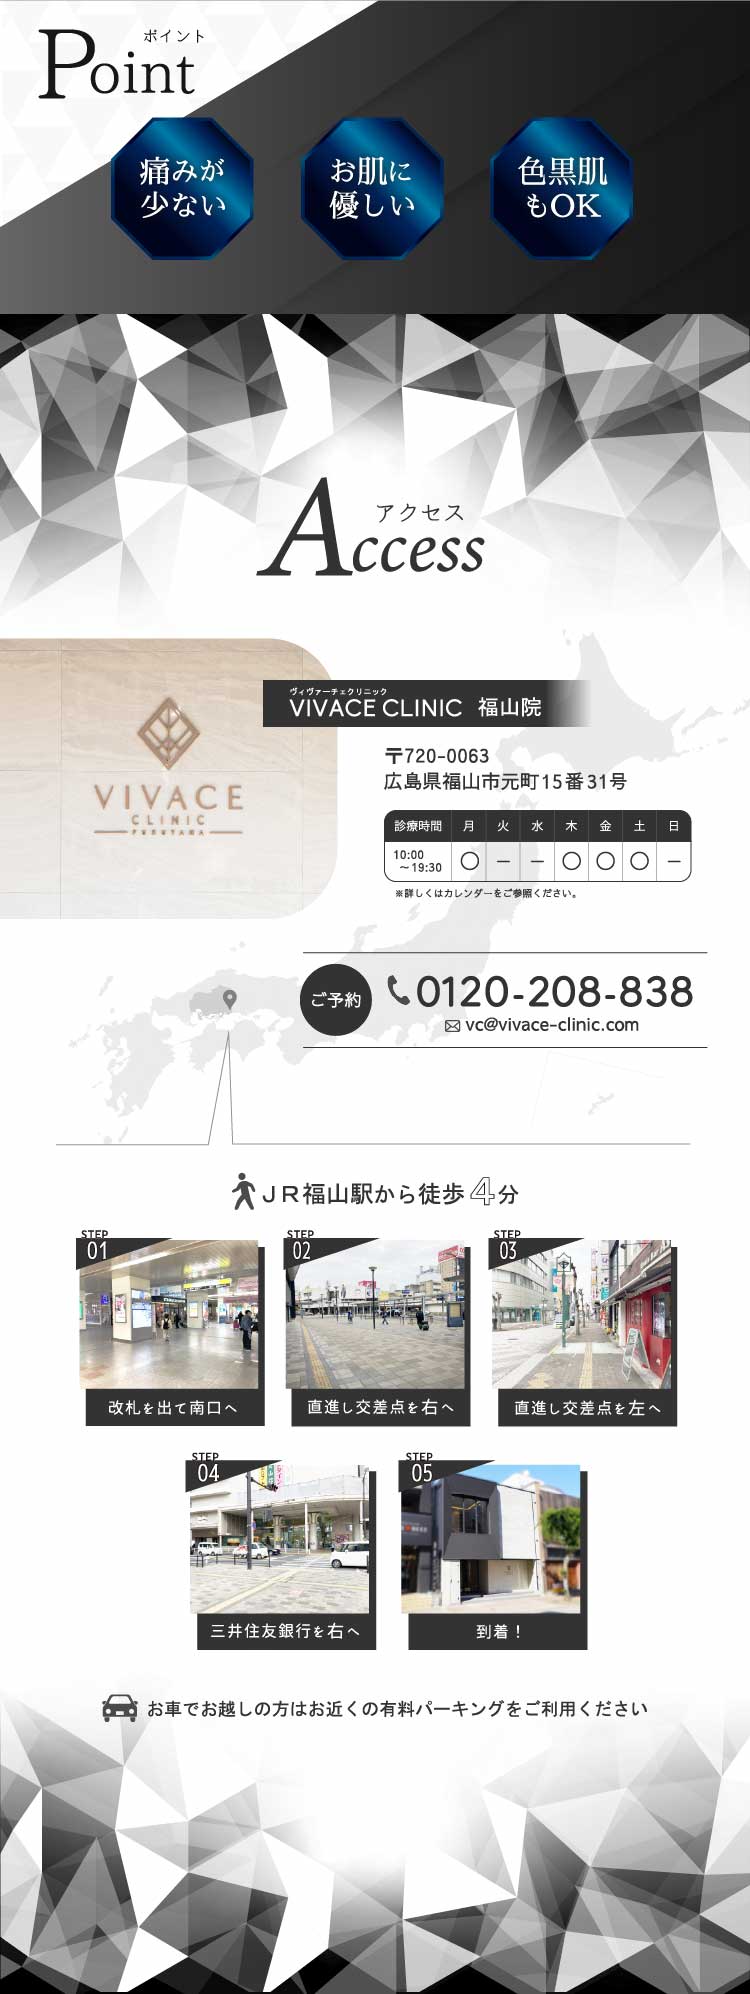 VIVACE CLINIC福山院へのアクセス